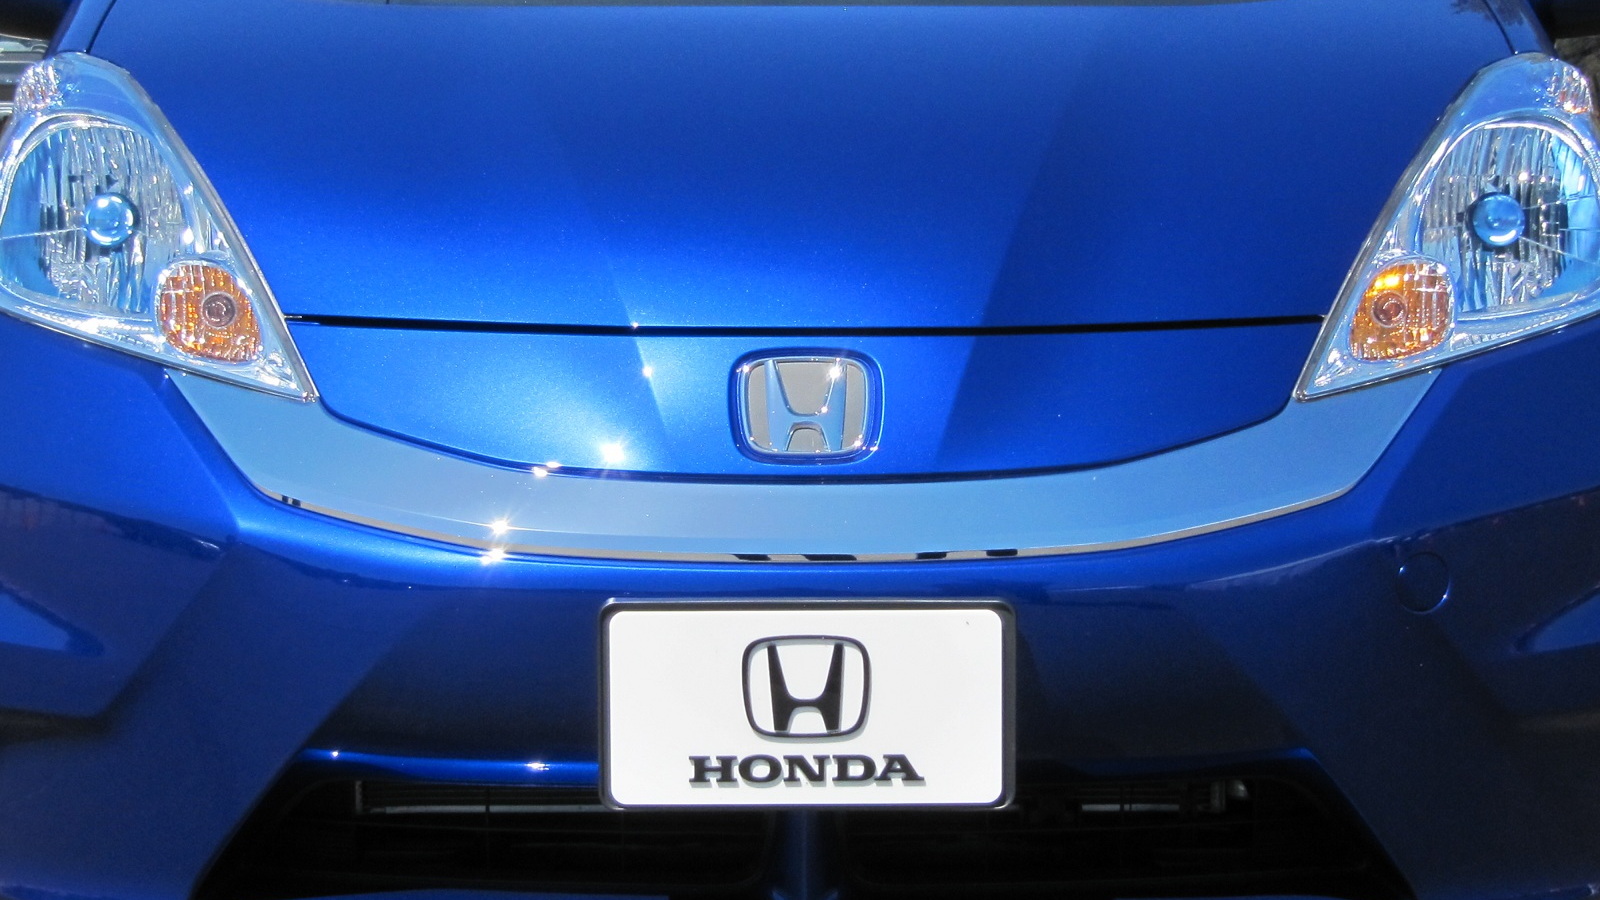 2013 Honda Fit EV drive event, Pasadena, CA, June 2012